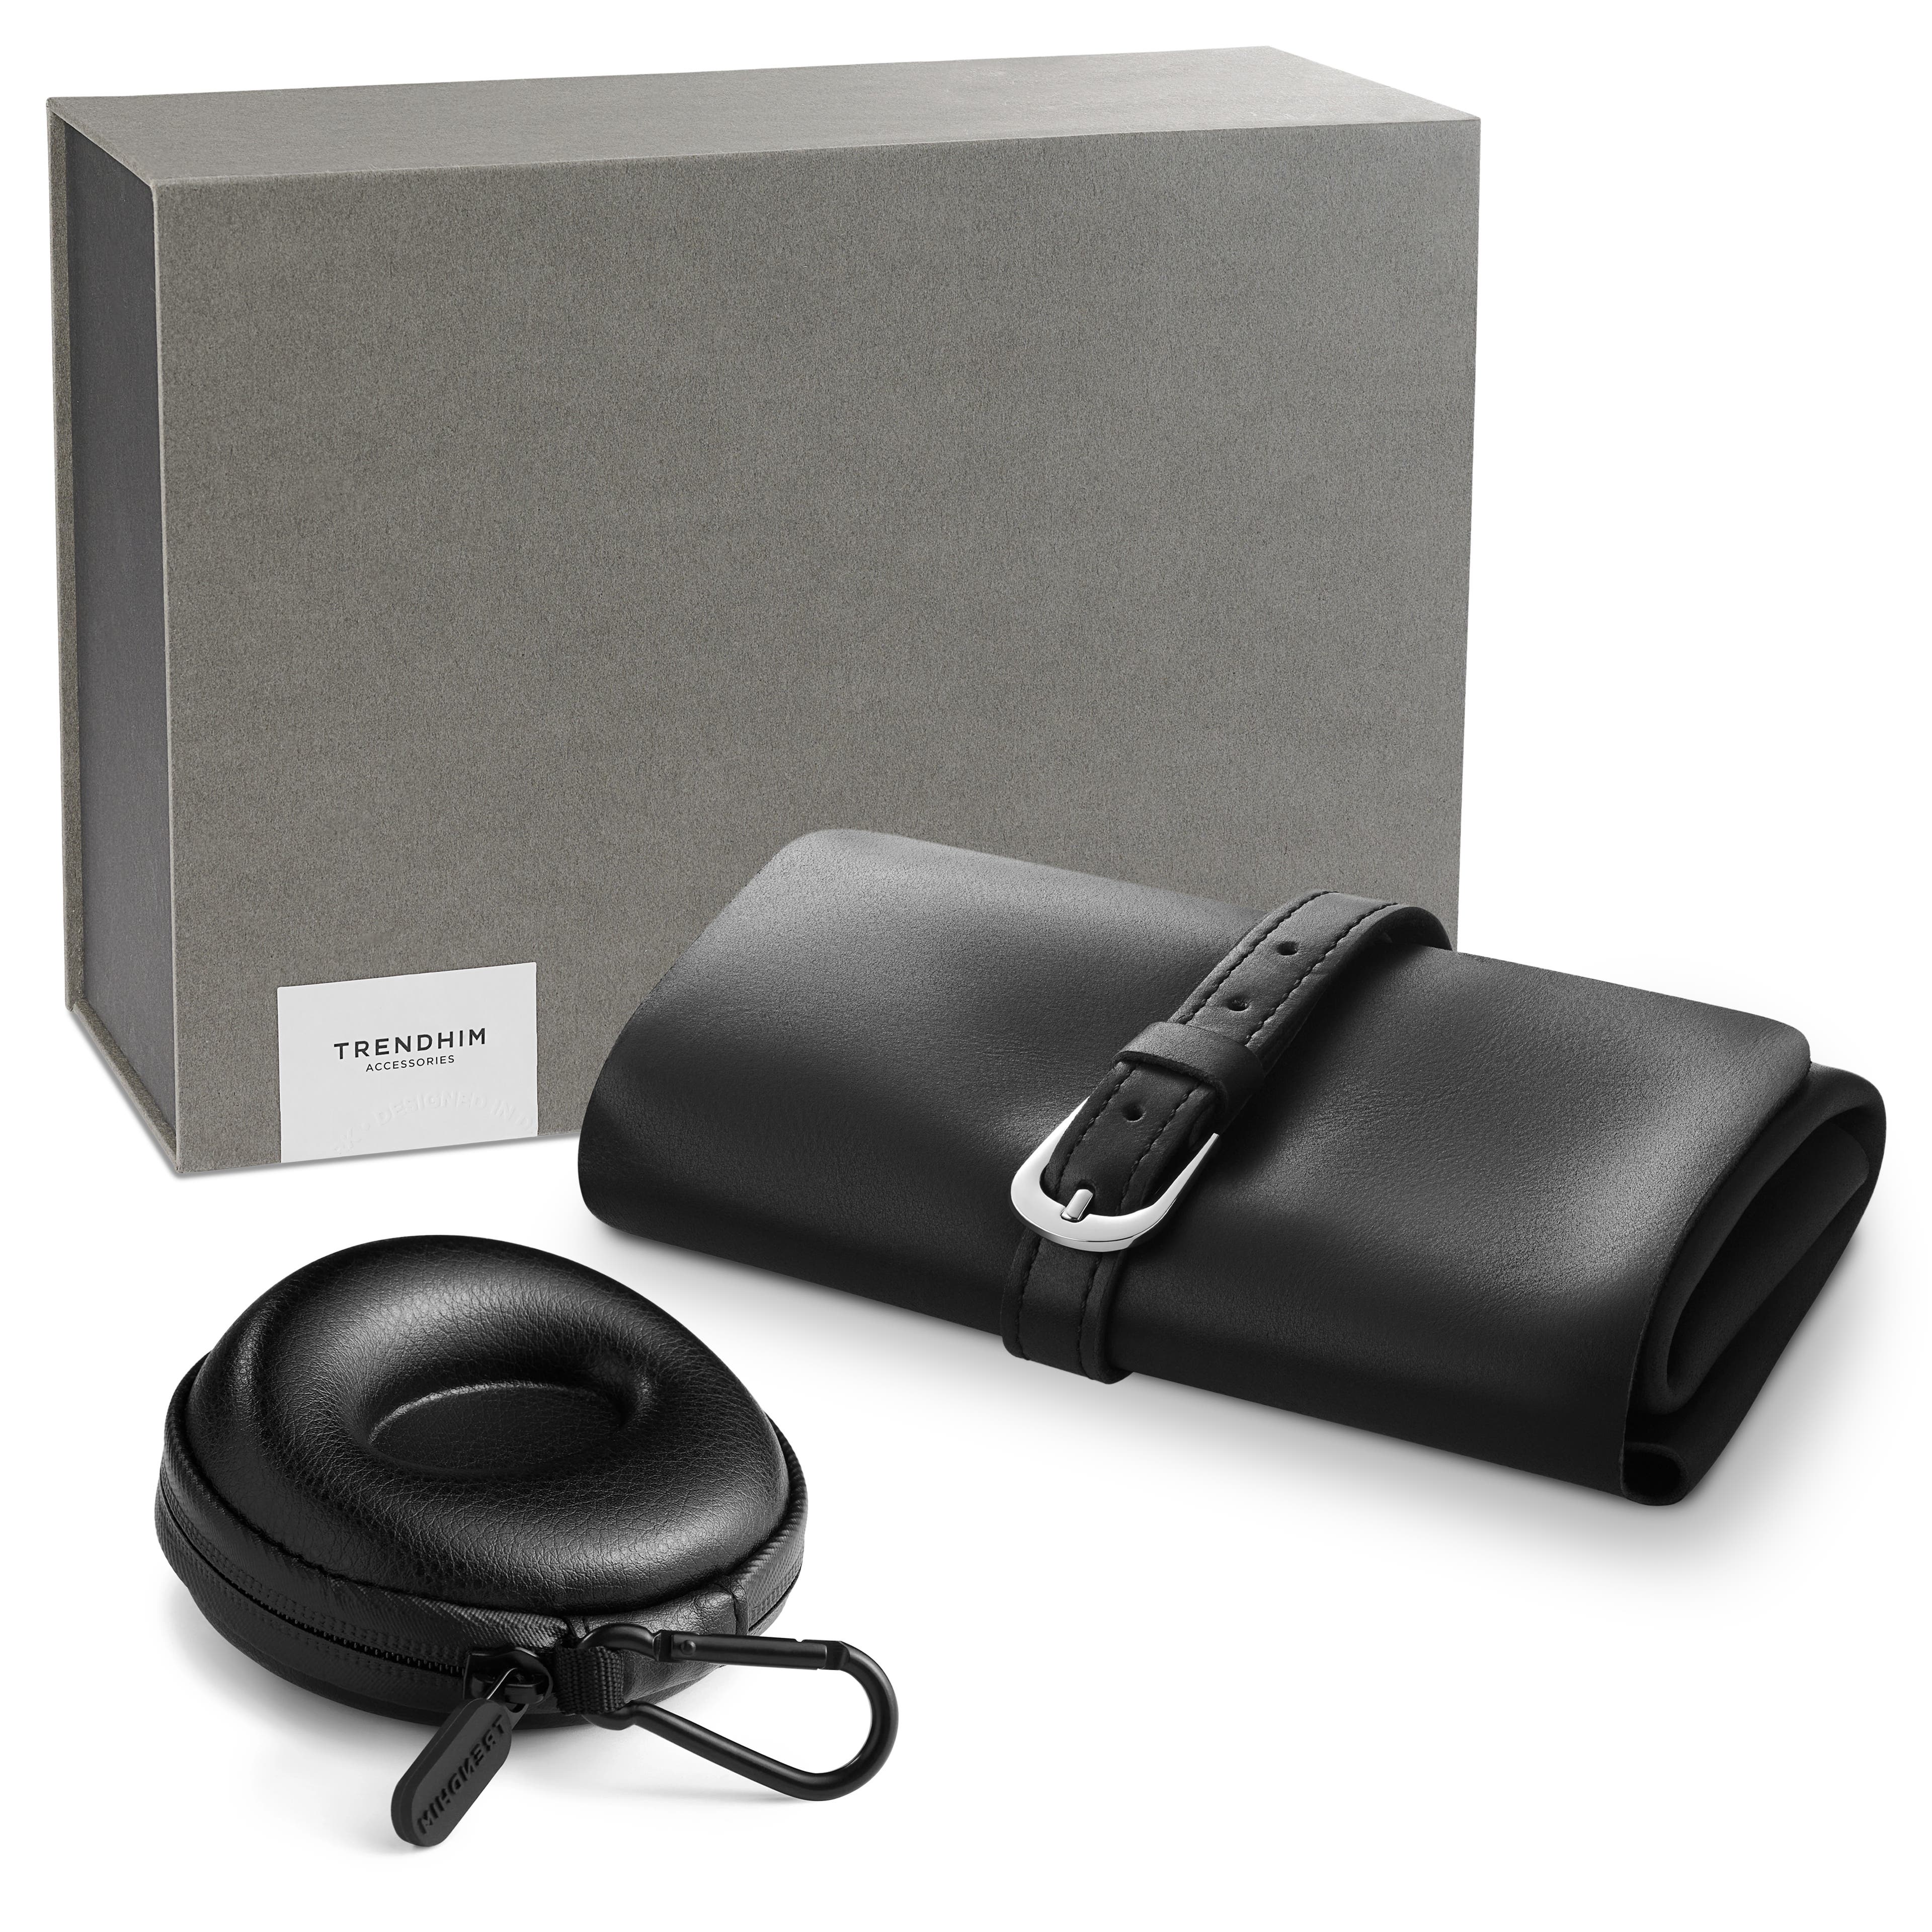 Travel Organiser Gift Box | Black Leather